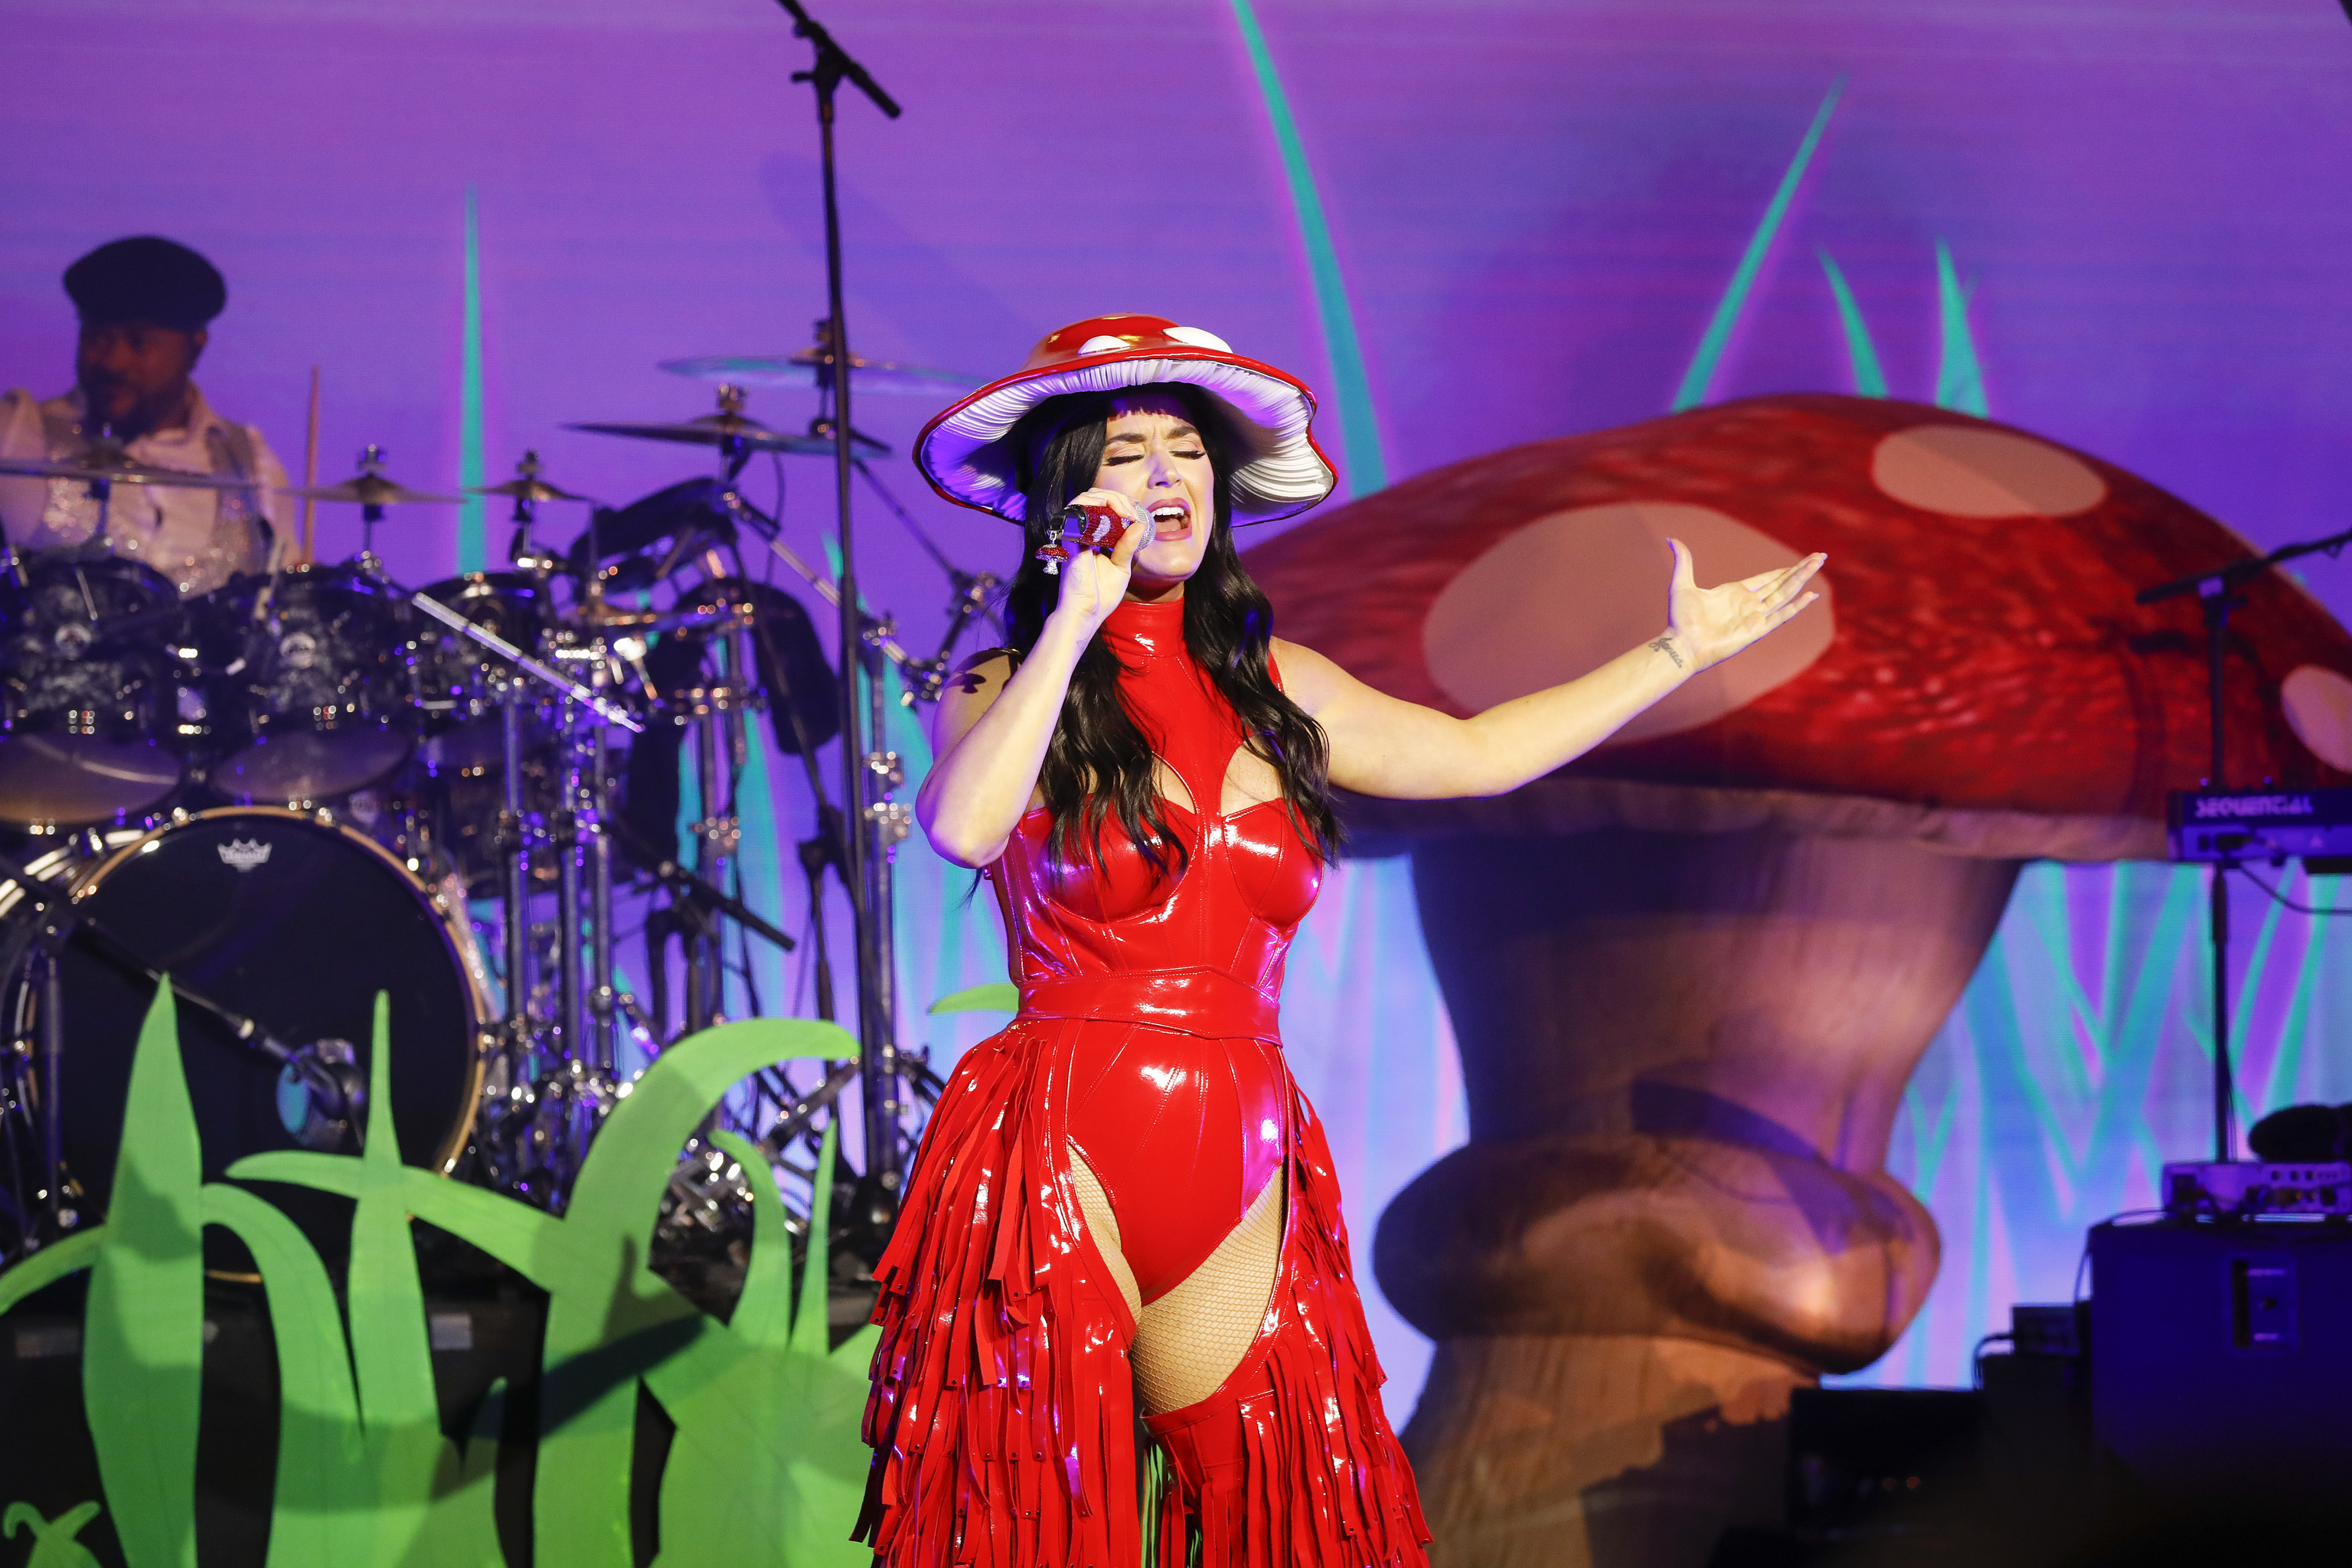 La cantante Katy Perry, durante la actuación en el barco.